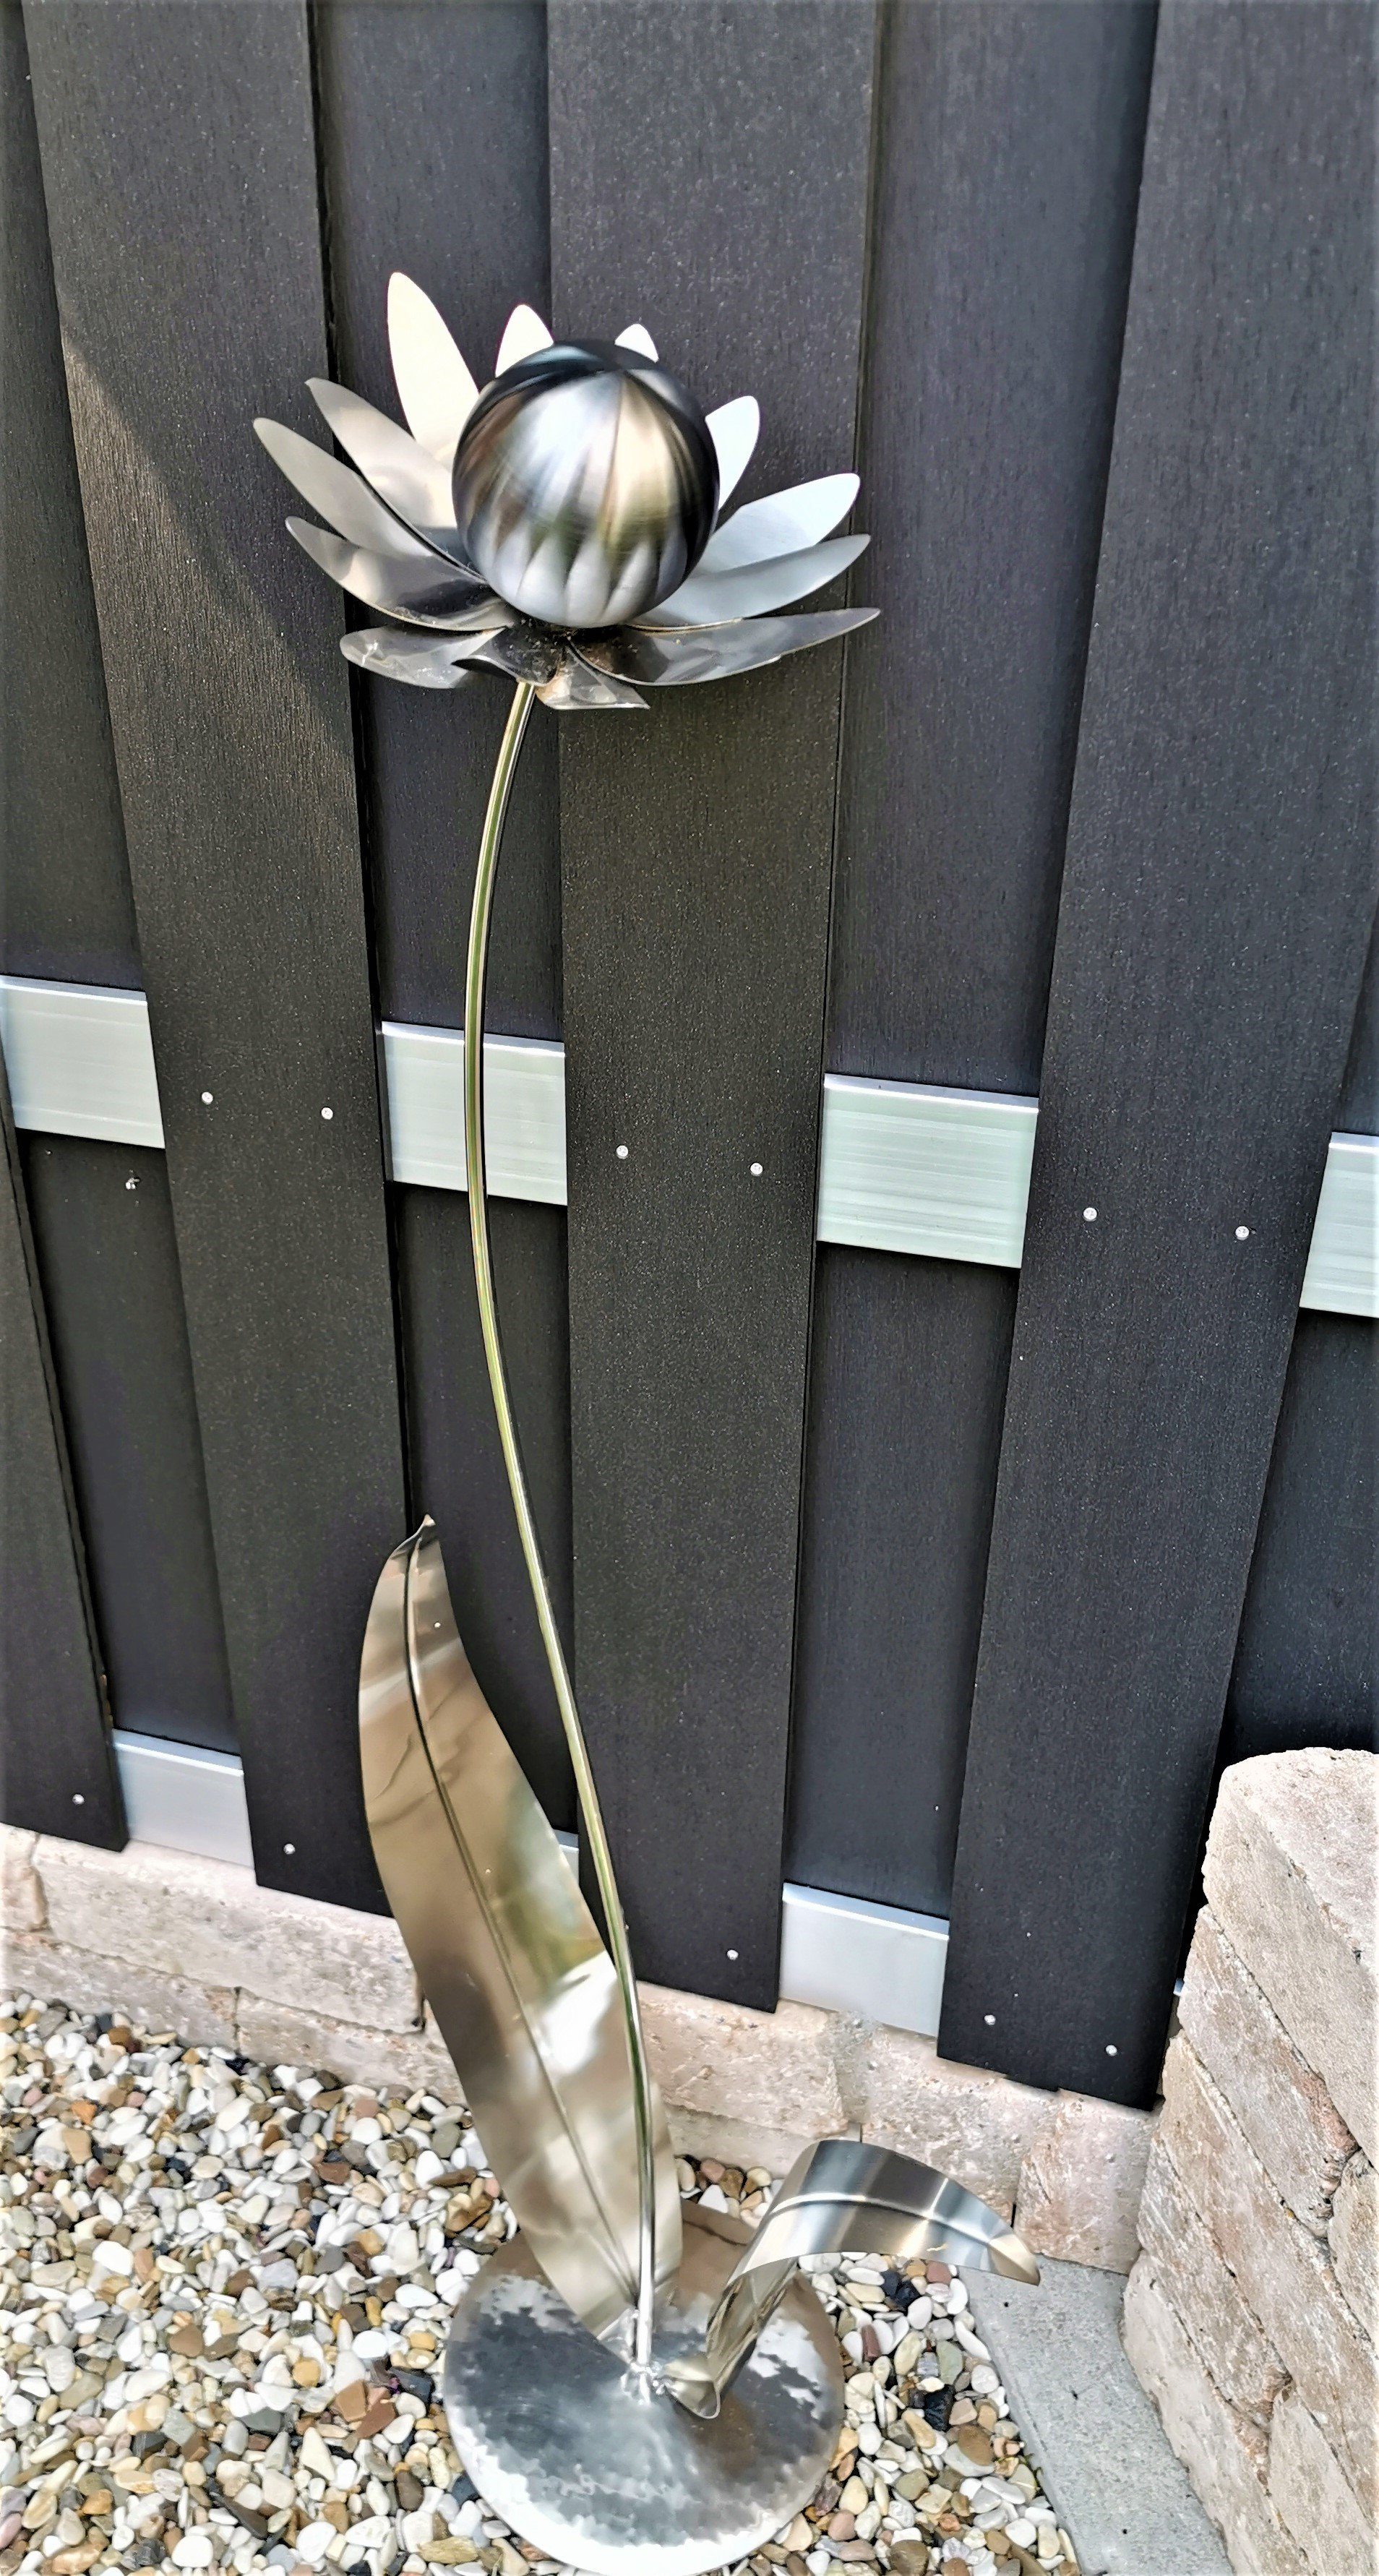 Jürgen Bocker Garten-Ambiente Gartenstecker Skulptur Blume Palermo Edelstahl Kugel schwarz matt gebürstet 120 cm Dekoration Garten